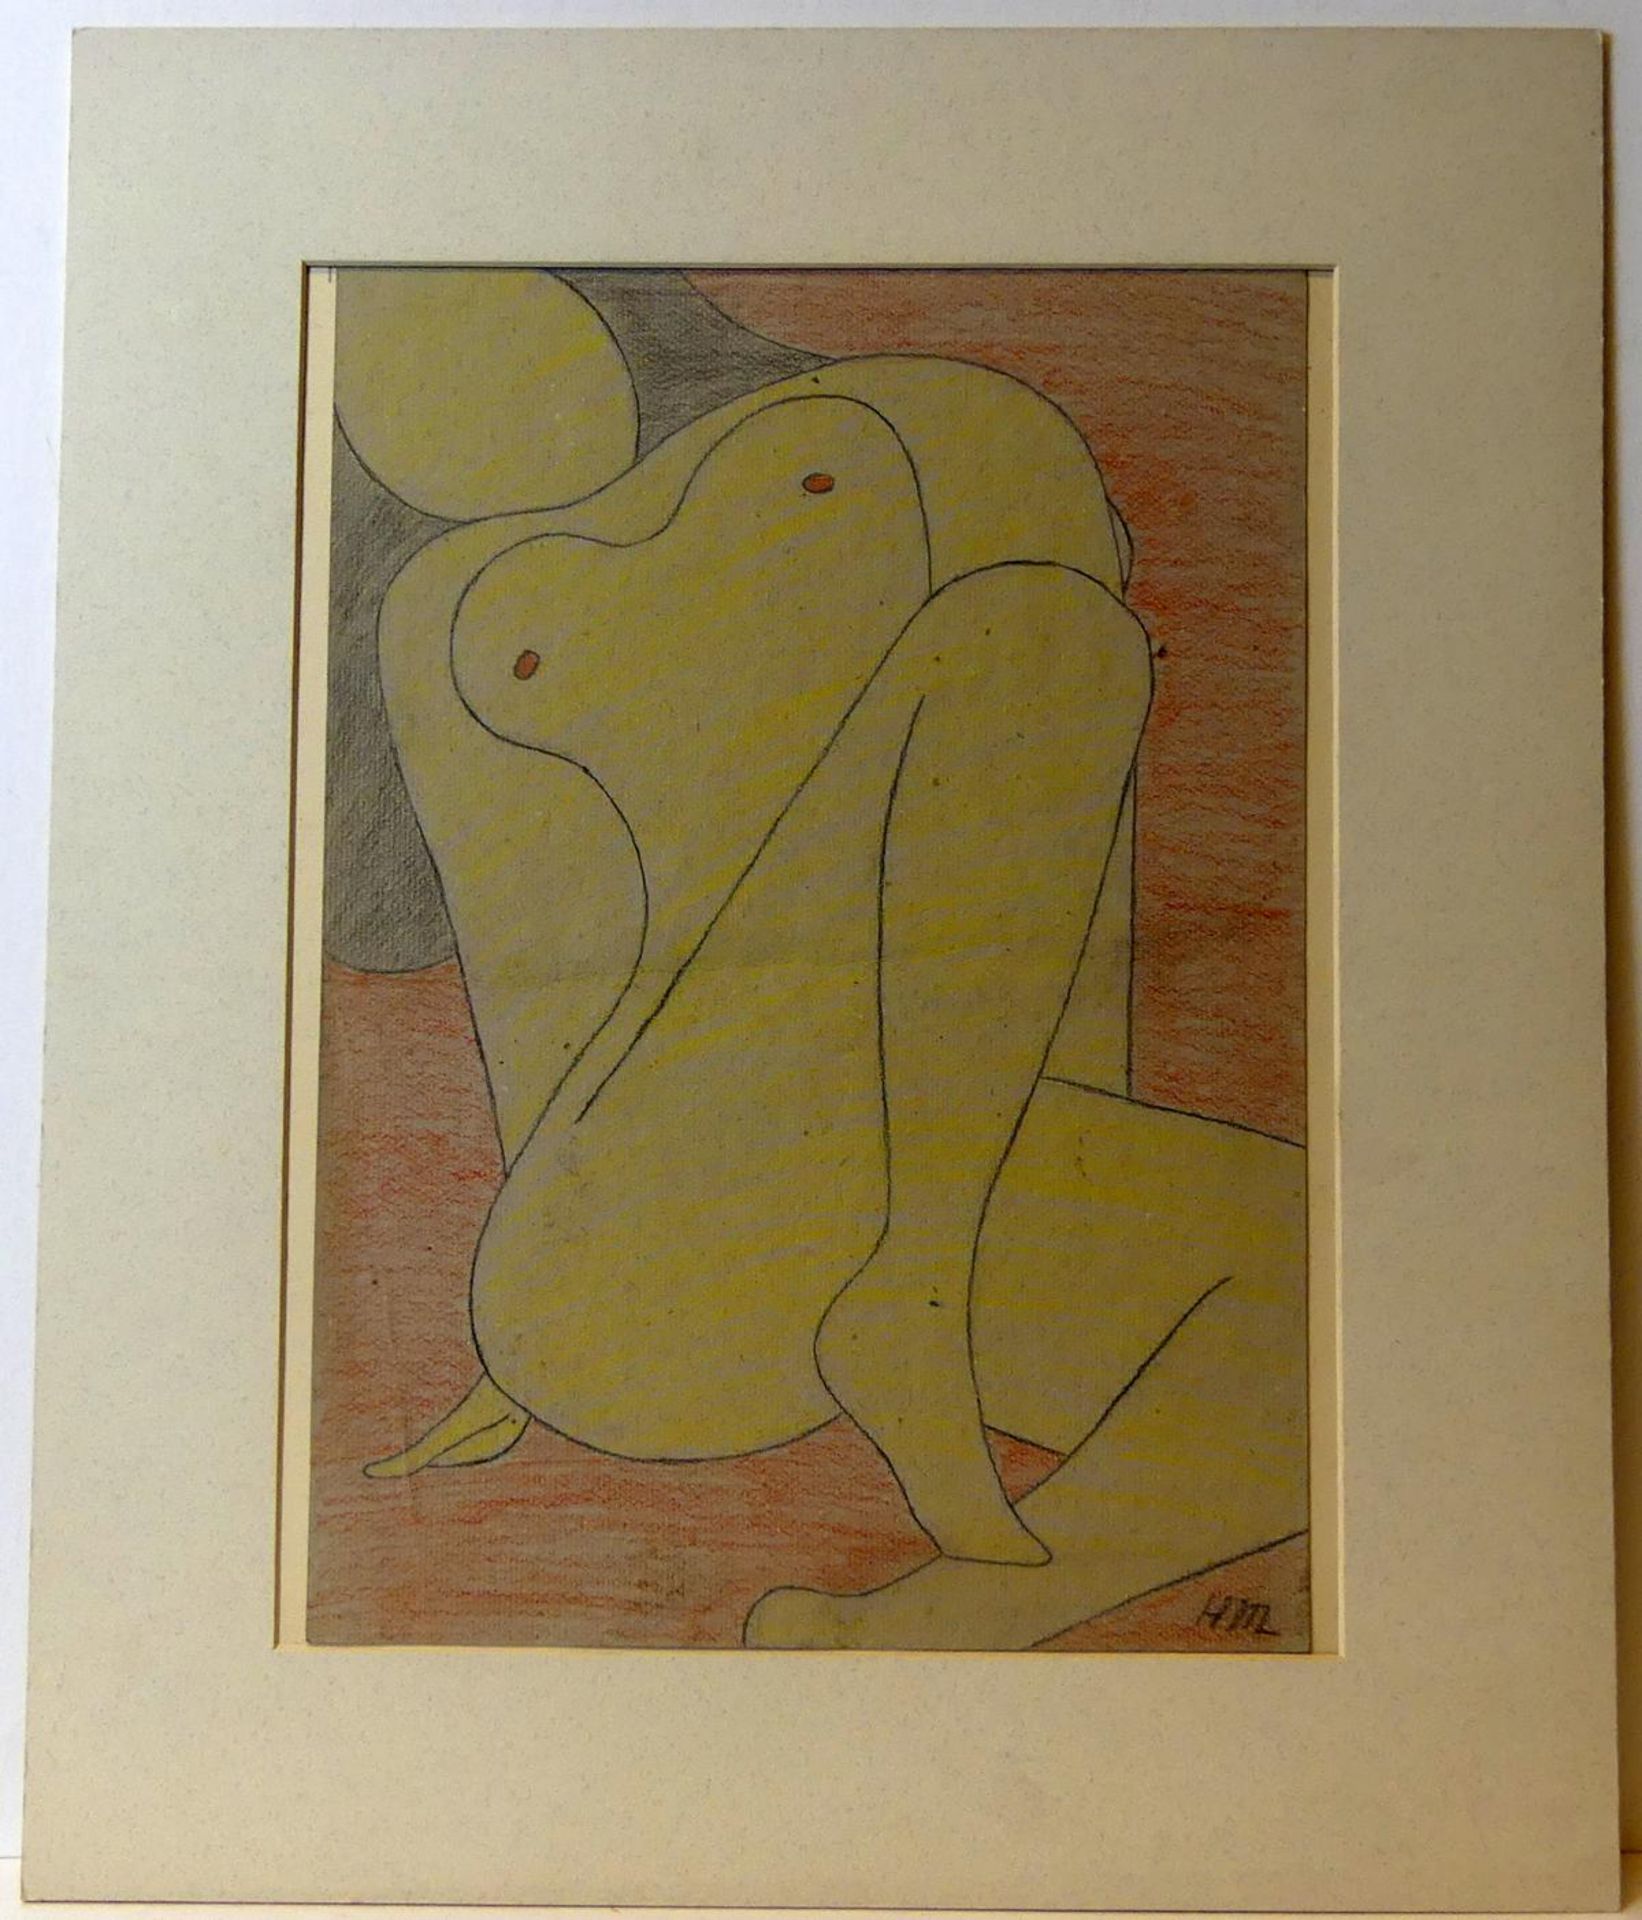 HM, "Damenakt",Farbbleistiftzeichnung auf Karton, Monogr., ca. 42 x 30 cm